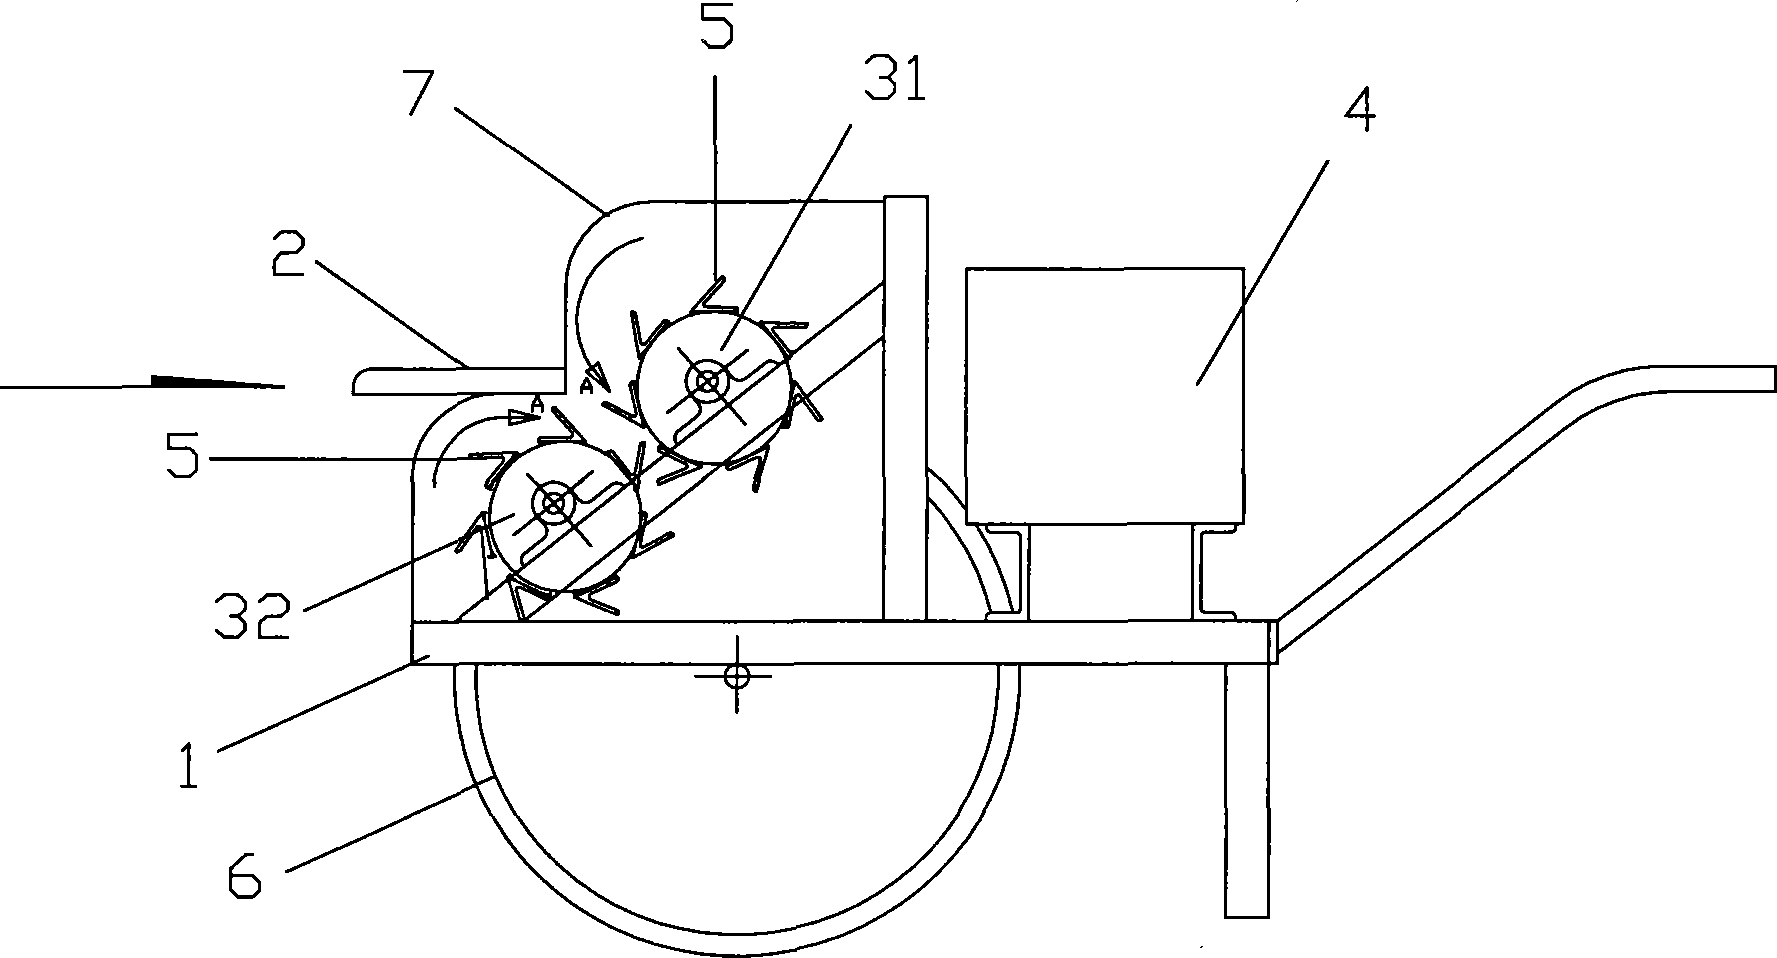 Return pull-type decorticating machine